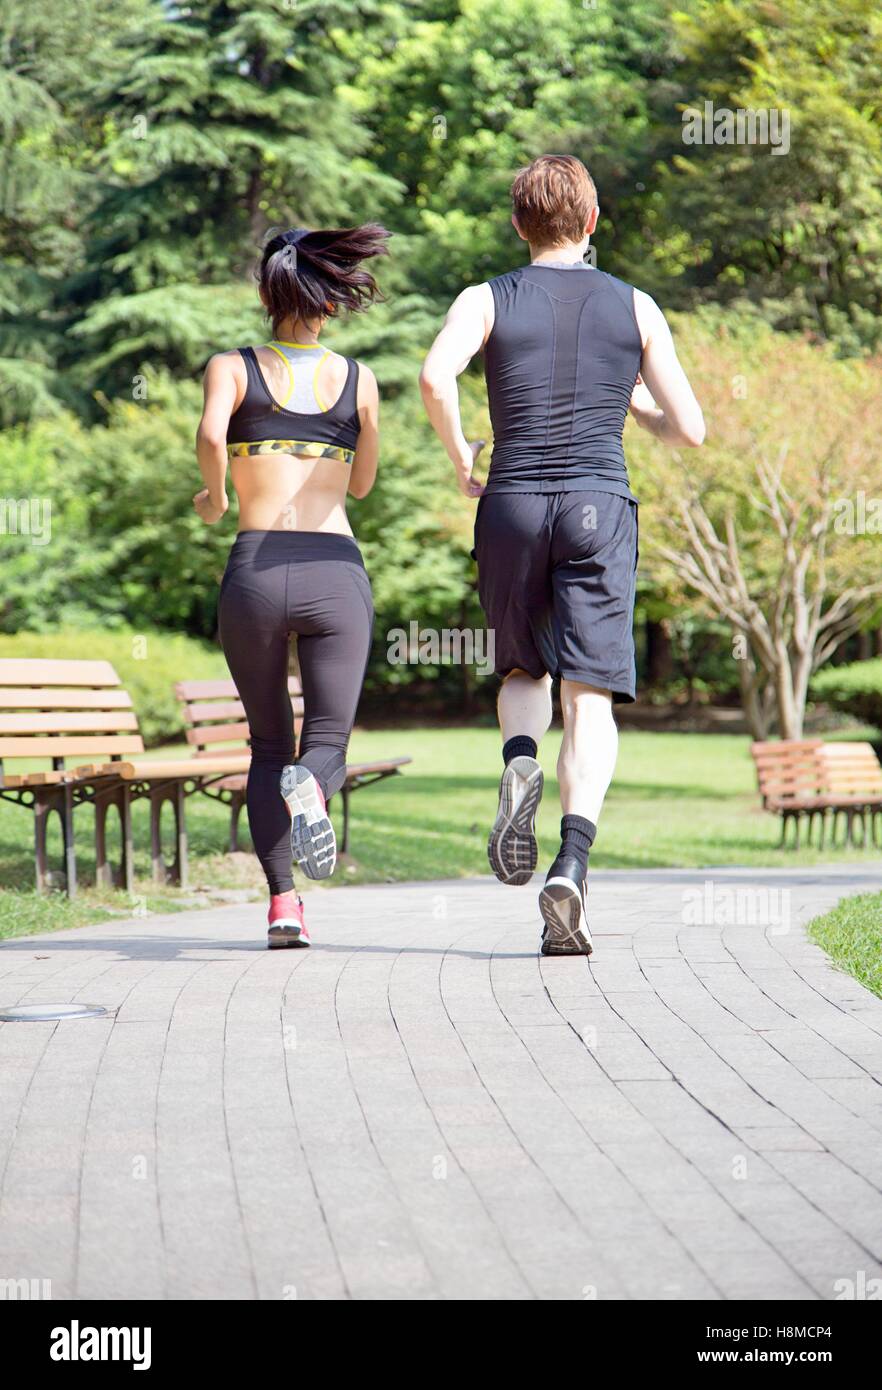 Les sportifs trail running en bonne santé vivant une vie active. Banque D'Images